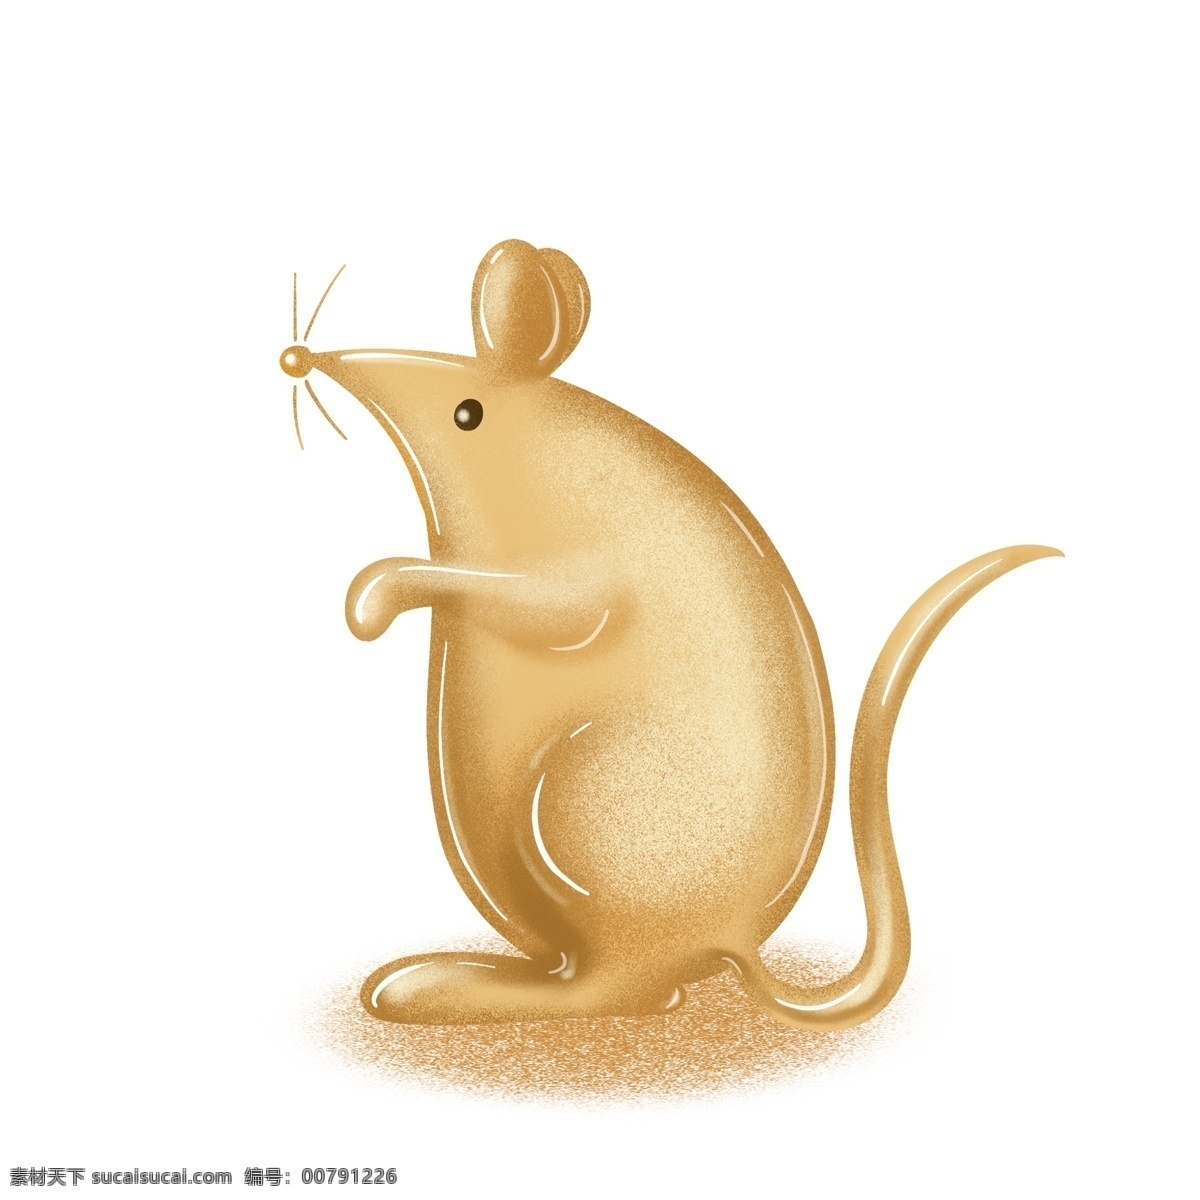 2020 鼠年 立体 鼠 可爱 卡通 金 老鼠 2020鼠年 立体鼠 立体金老鼠 耗子 金属 金色 金子 金黄色 贵金属 财富 金鼠 金属质感 效果元素 装饰图案